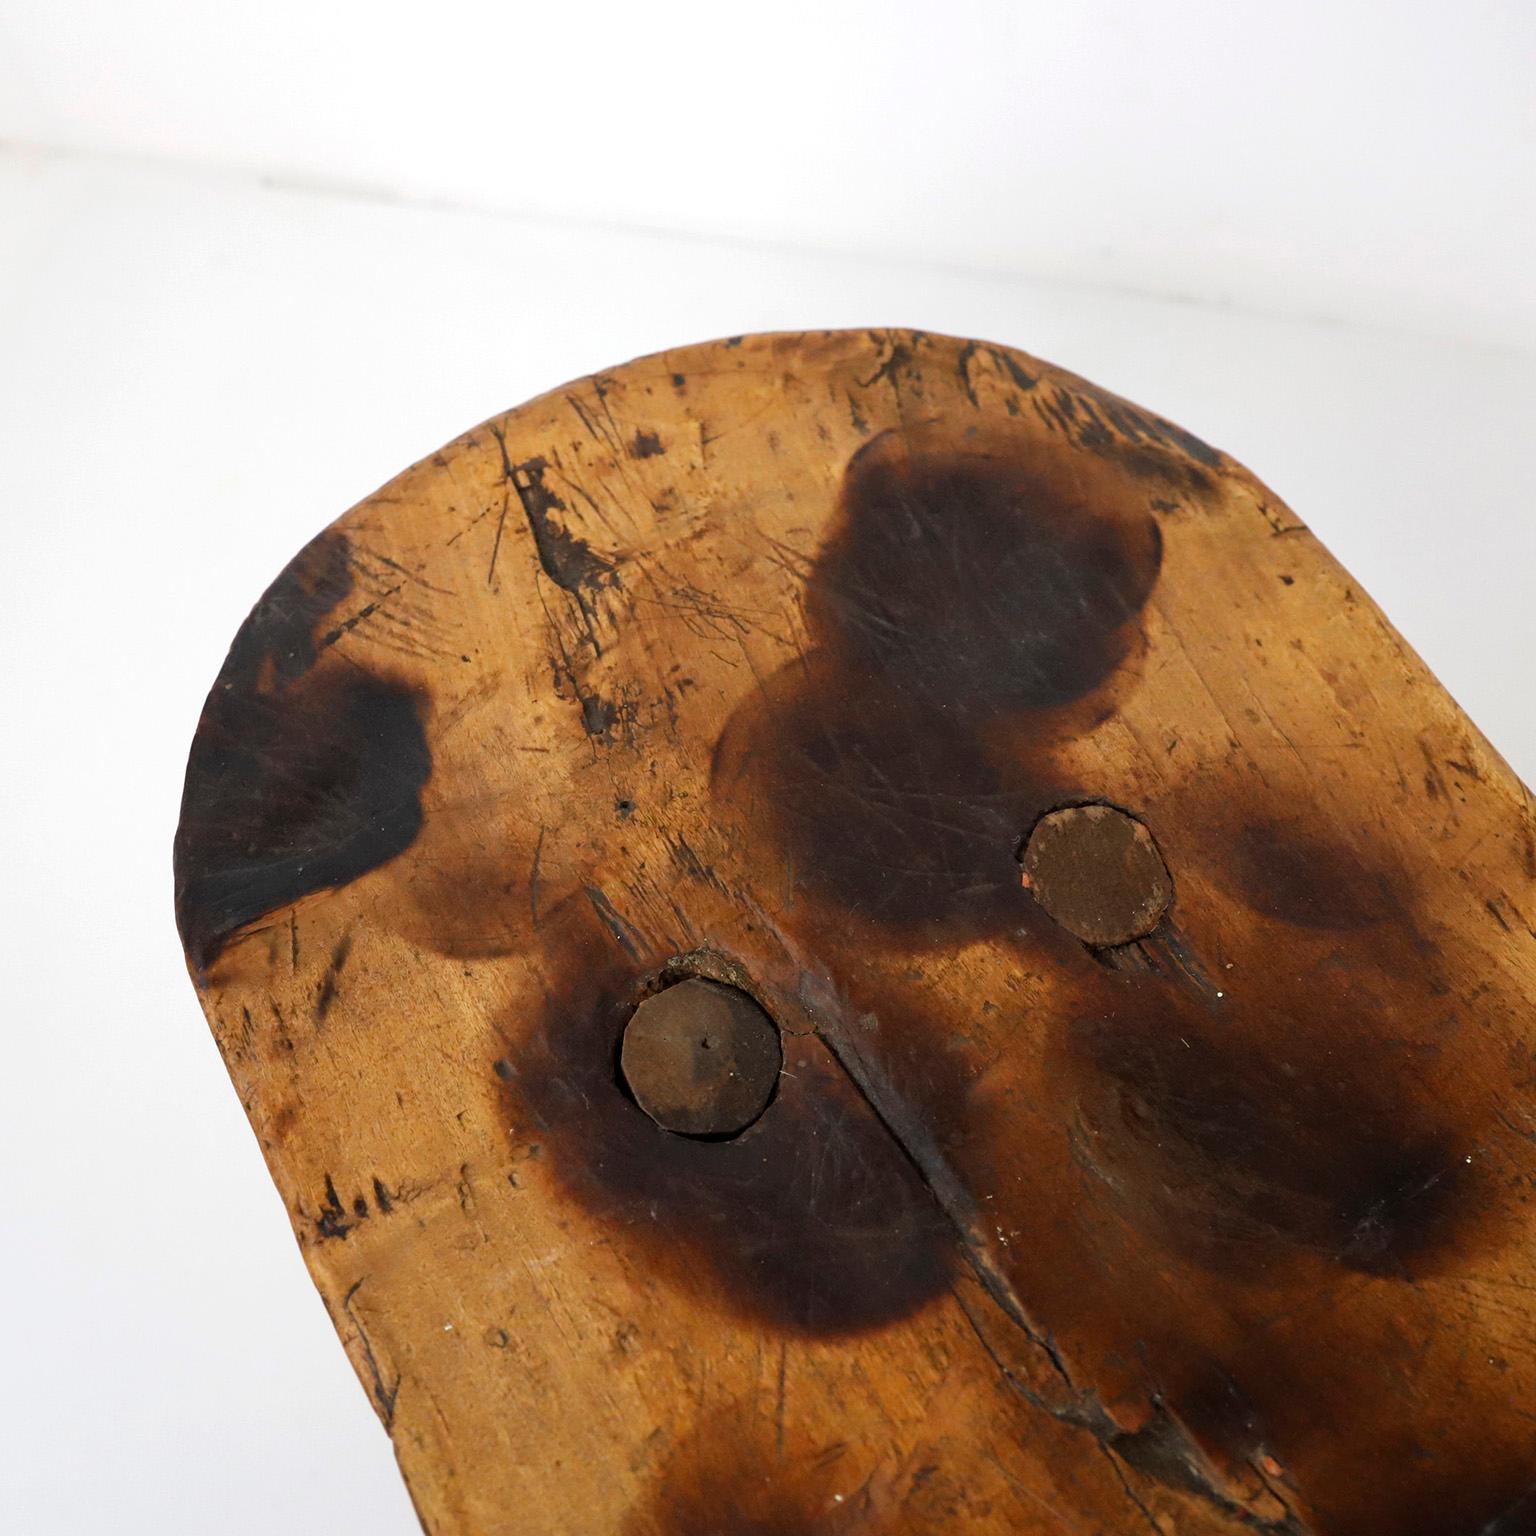 Wir bieten diesen Hocker aus Mesquite-Hartholz an, ca. 1930. Hergestellt in Mexiko, handgeschnitzt mit Machete und Meißel. Vollständig restauriert. Deutliche Alters- und Gebrauchsspuren, bereit, als Hocker oder Beistelltisch verwendet zu werden.